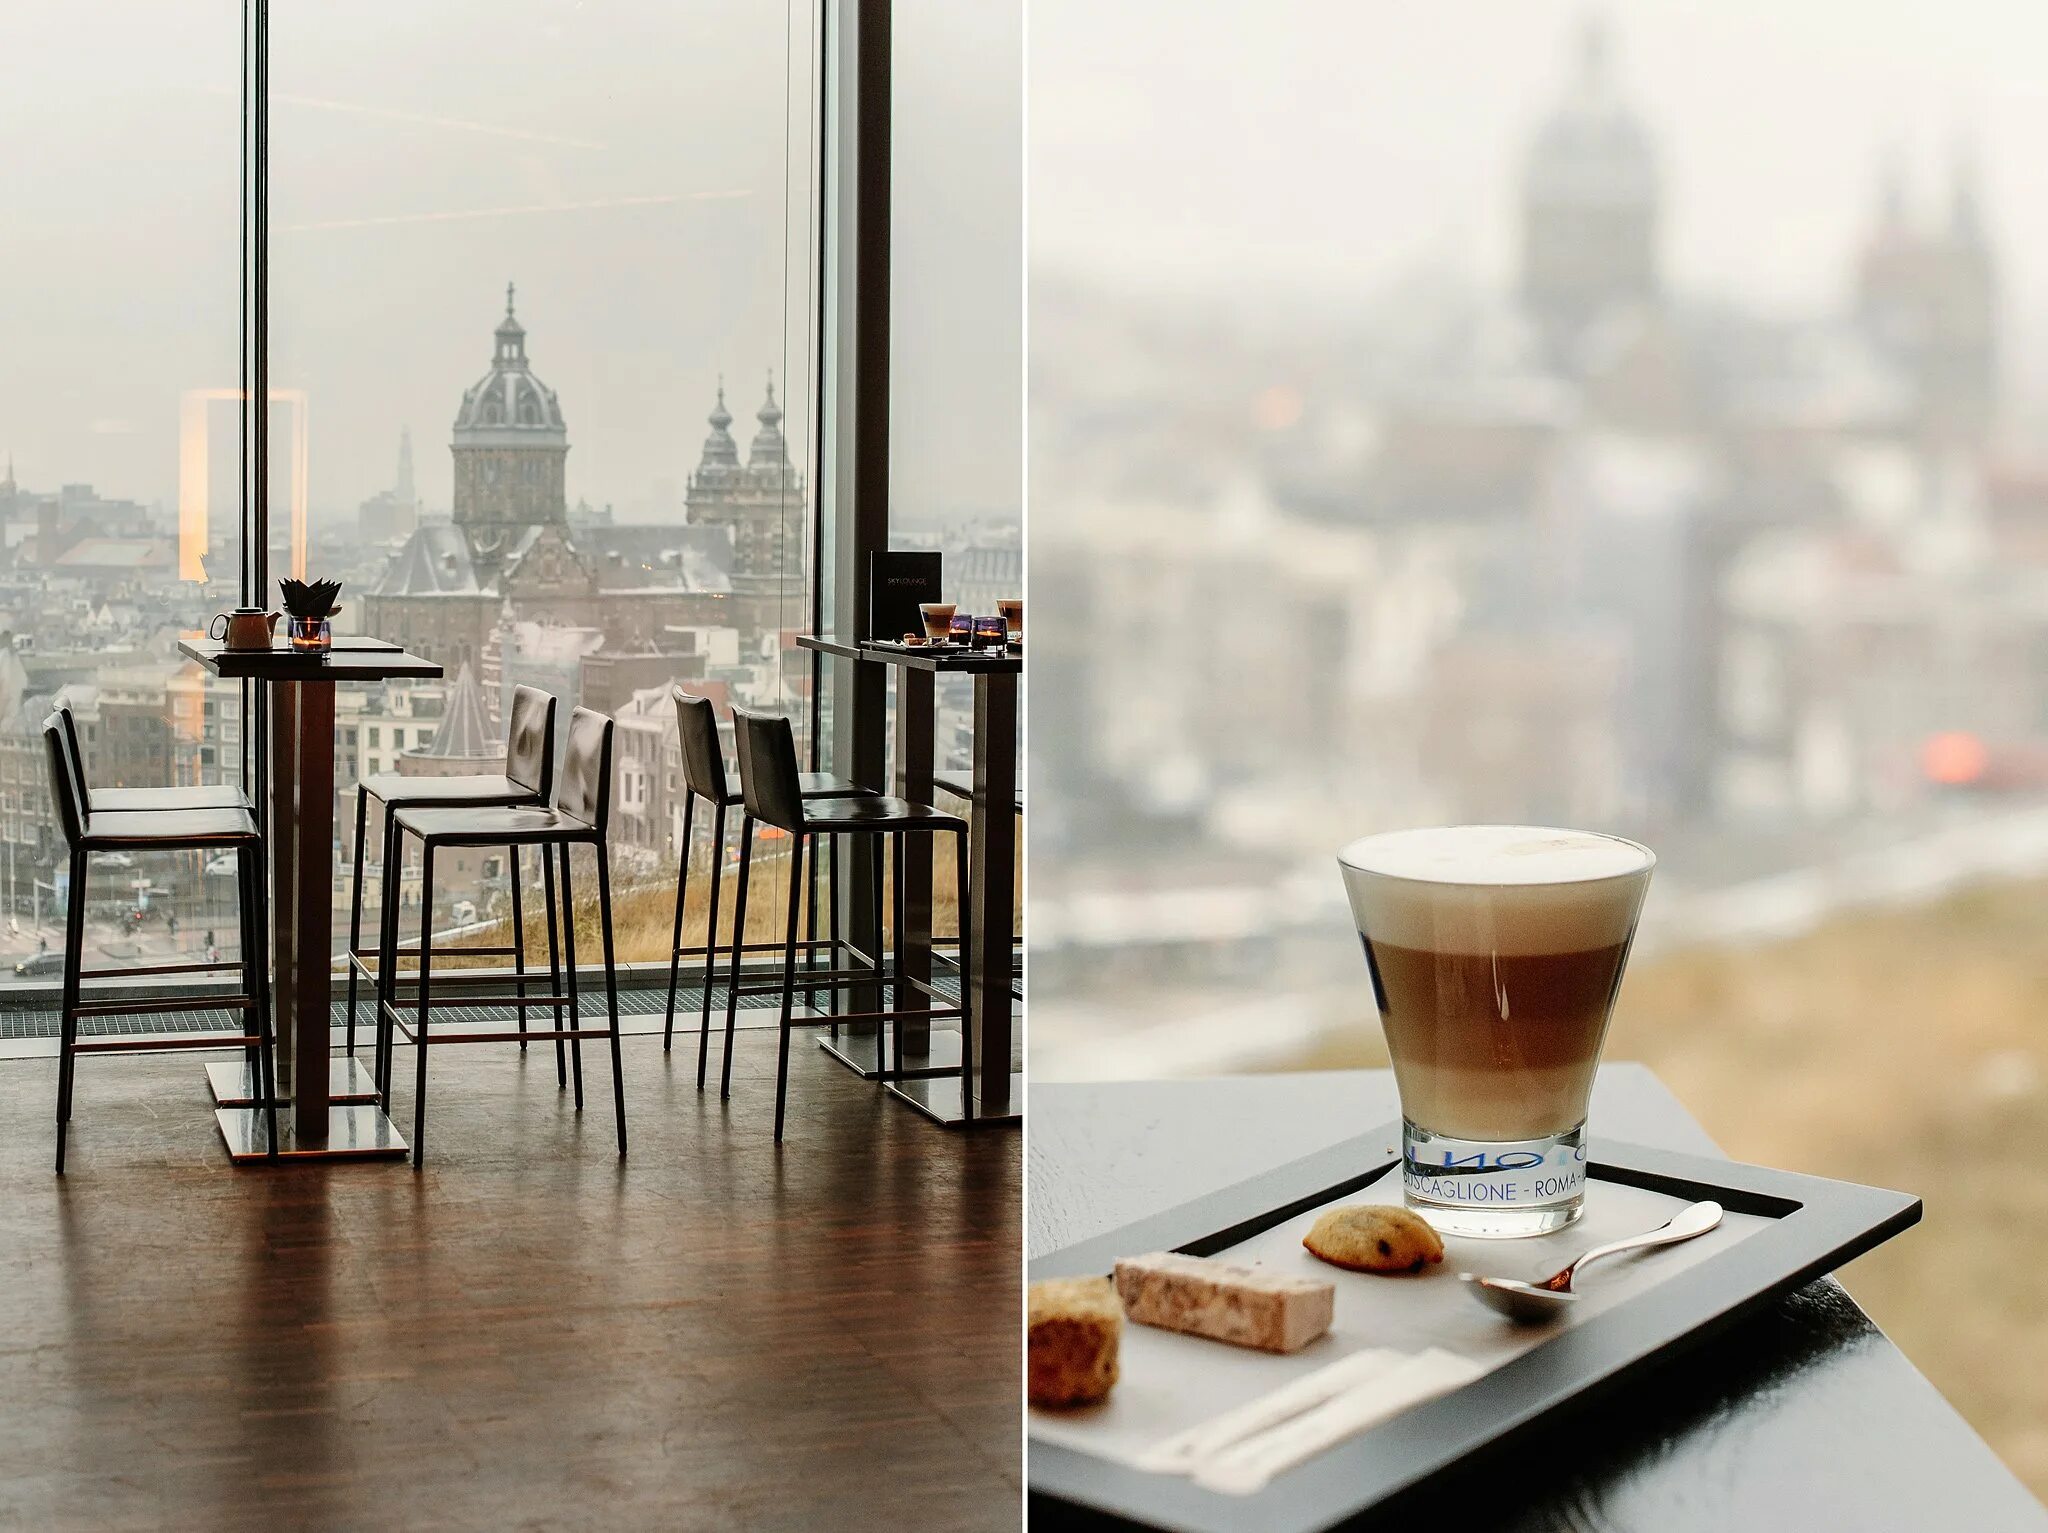 Вид из окна кафе. Вид из окна кофейни. Кафе с панорамными окнами. Красивый вид из окна кафе.